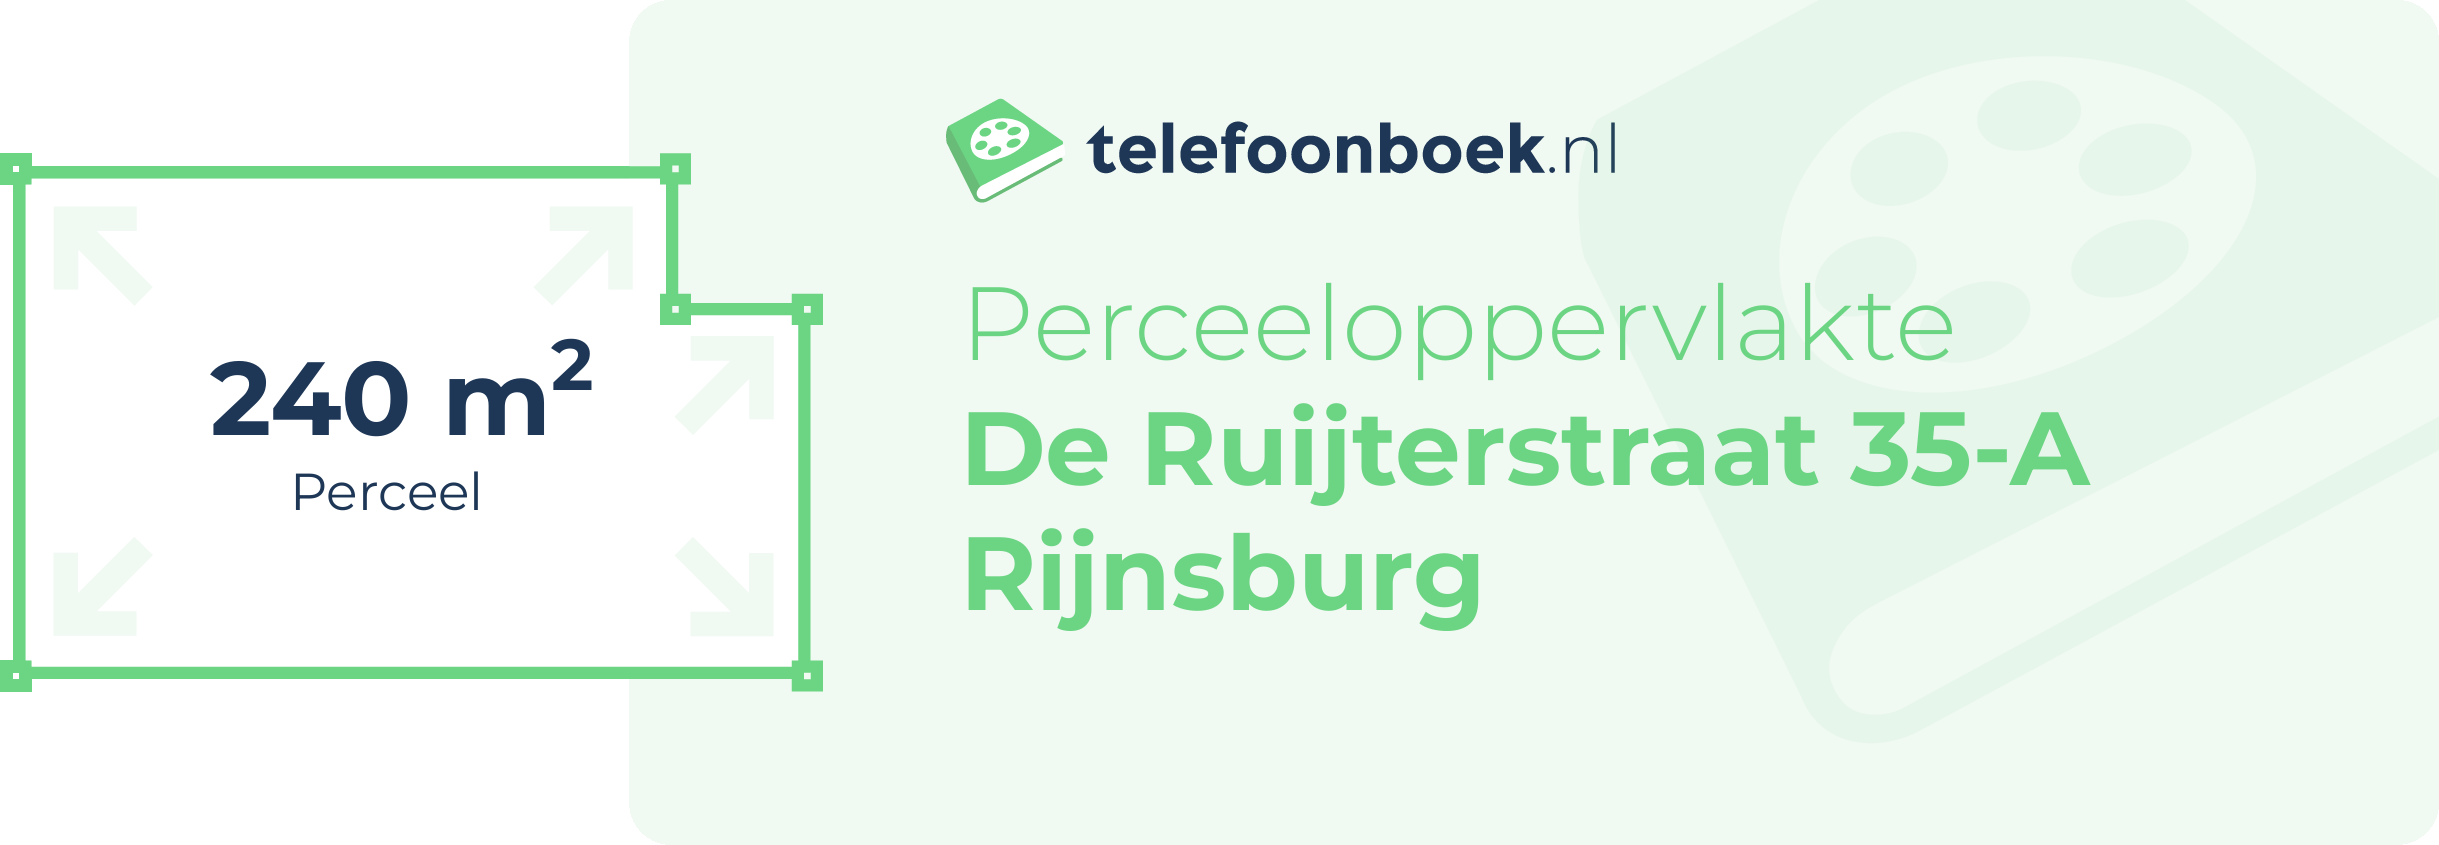 Perceeloppervlakte De Ruijterstraat 35-A Rijnsburg